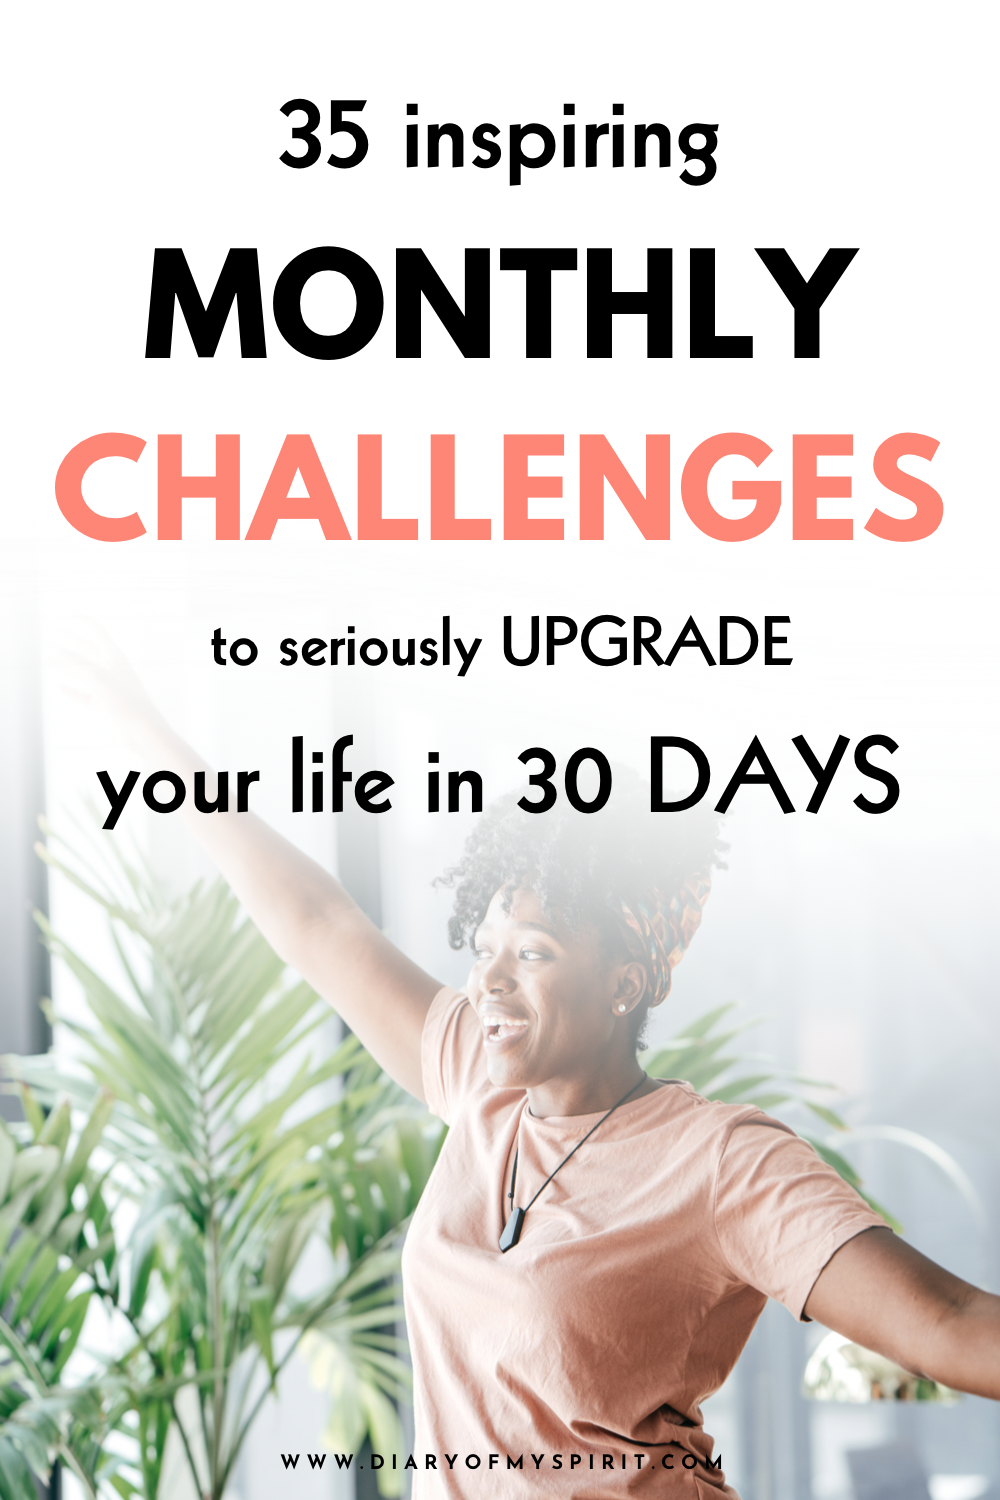 30 day challenge ideas. 30 days challenge ideas. 30 days challenge. challenges 30 days. month challenges. monthly challenges. monthly challenge. 30 daily challenges. month challenges.